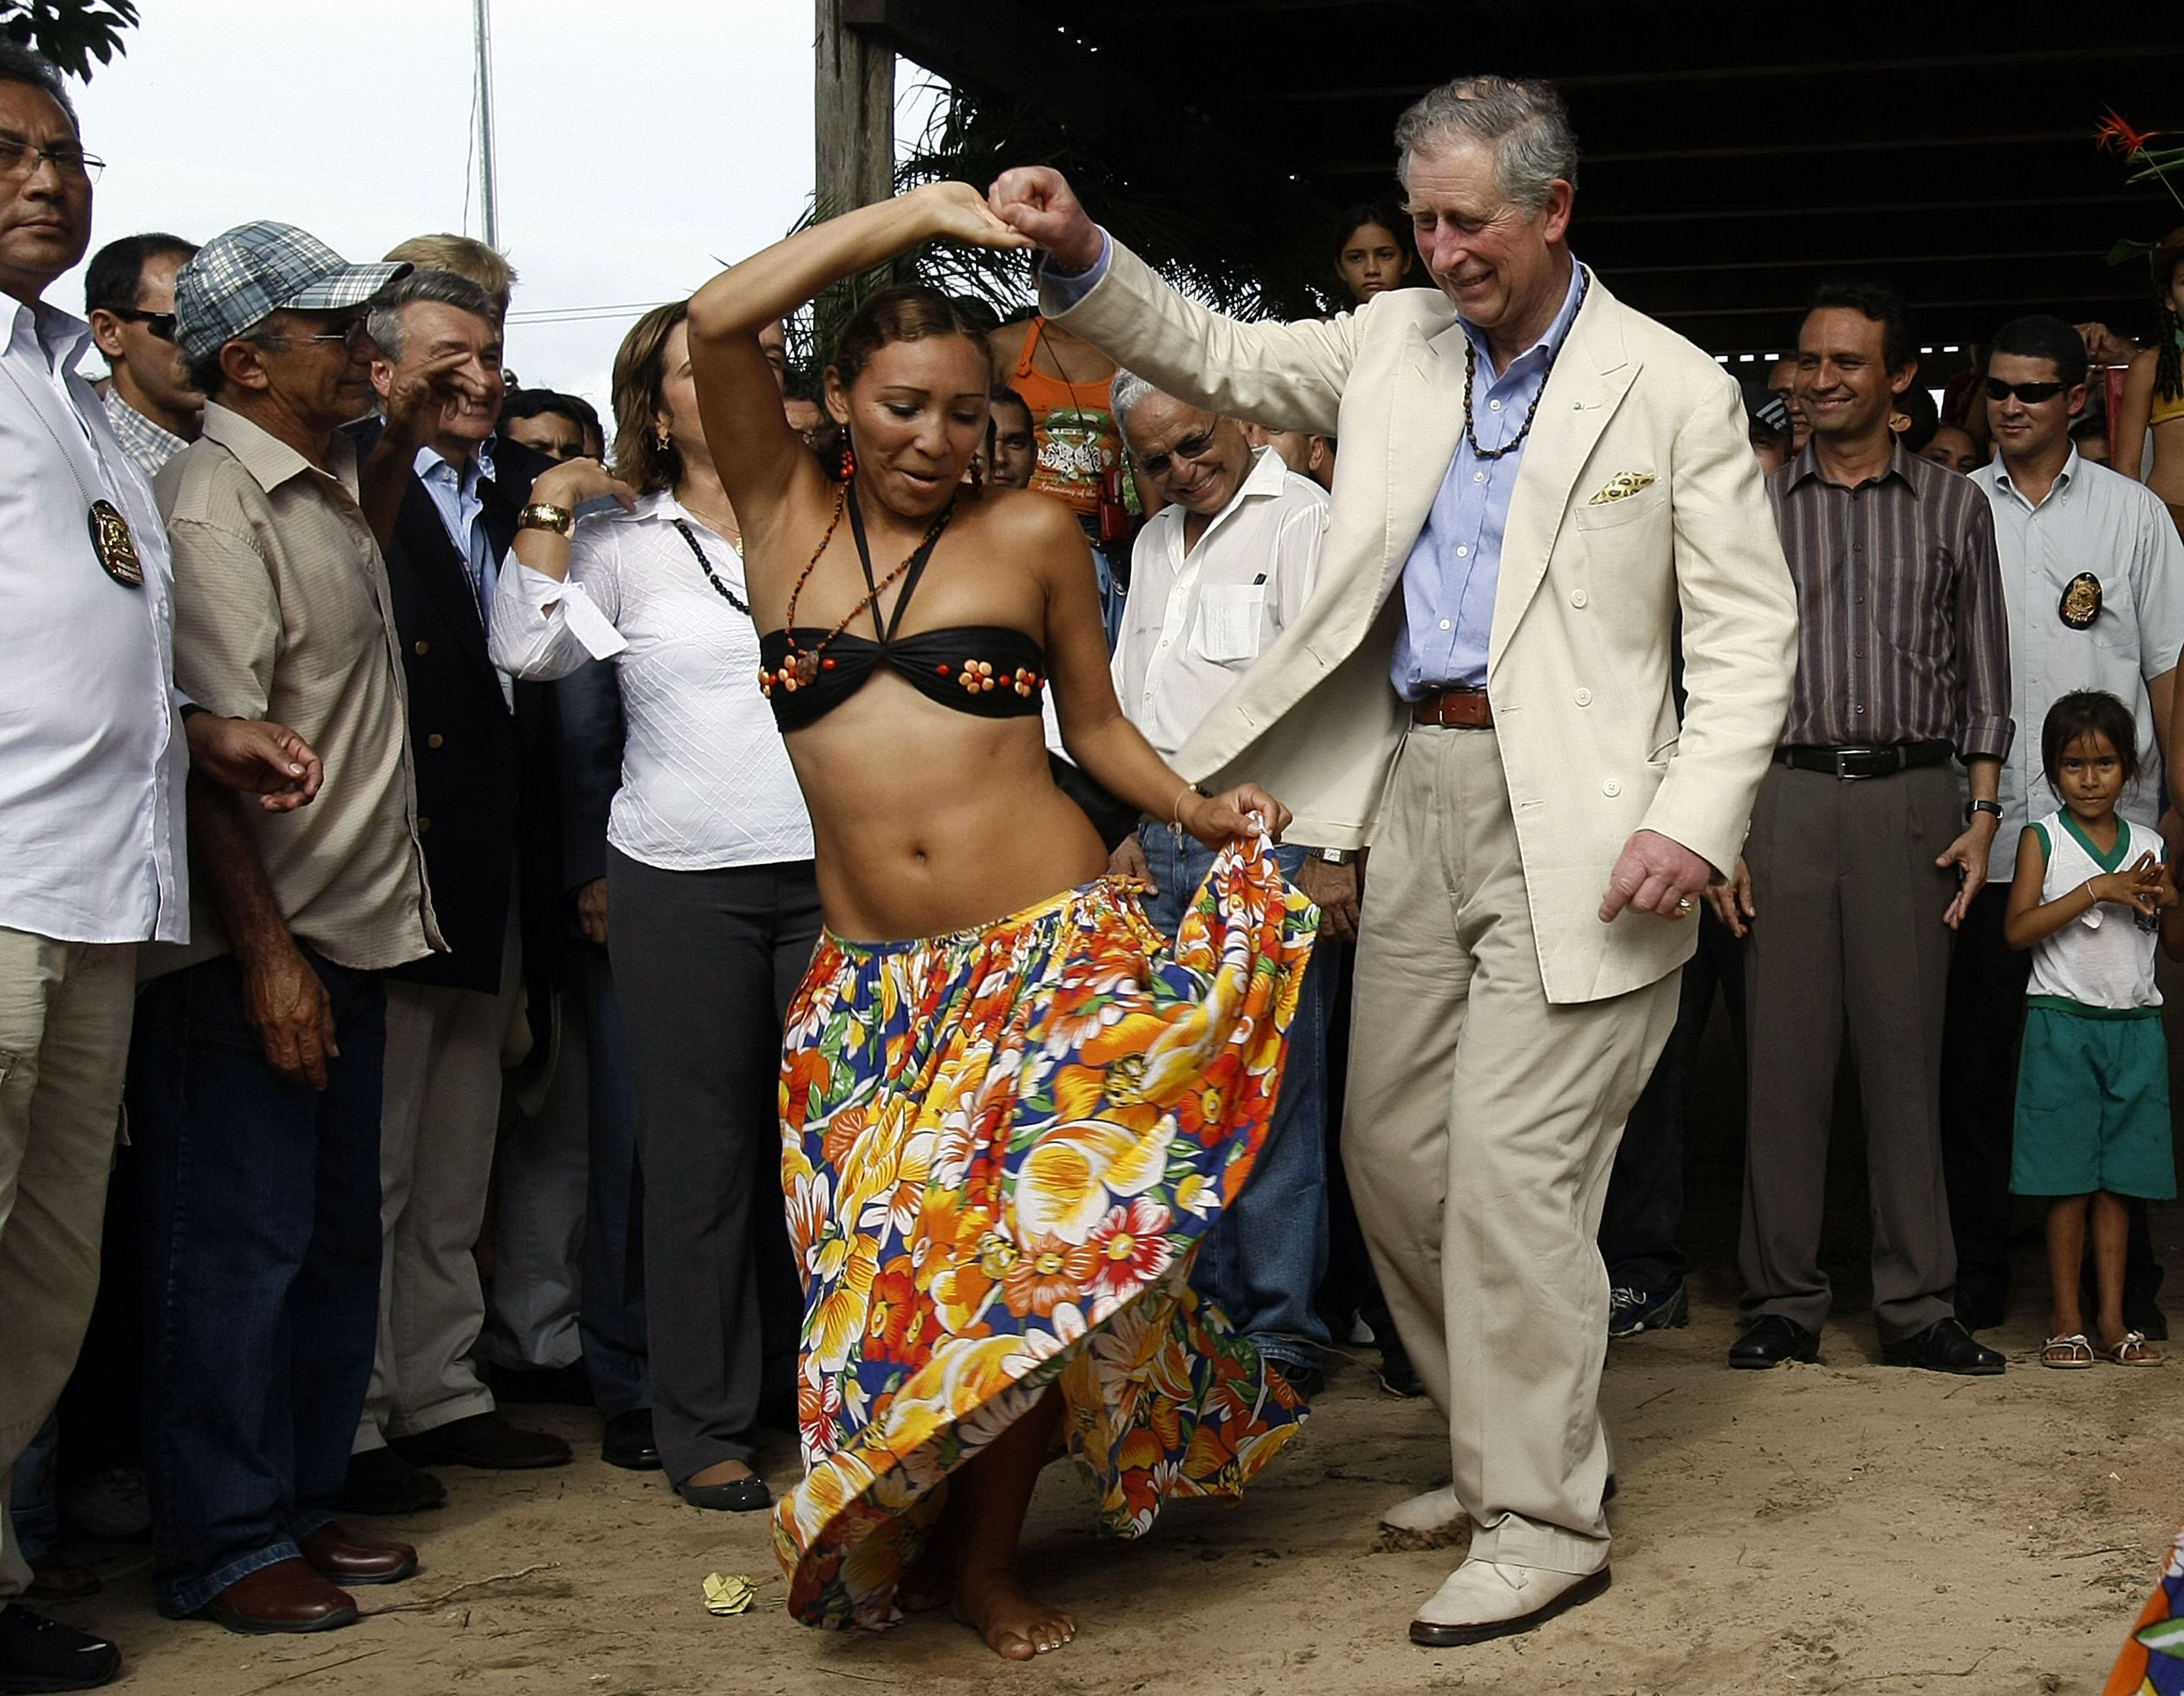 Charles danst de Caribo, een traditionele dans, tijdens een bezoek aan Brazilië.